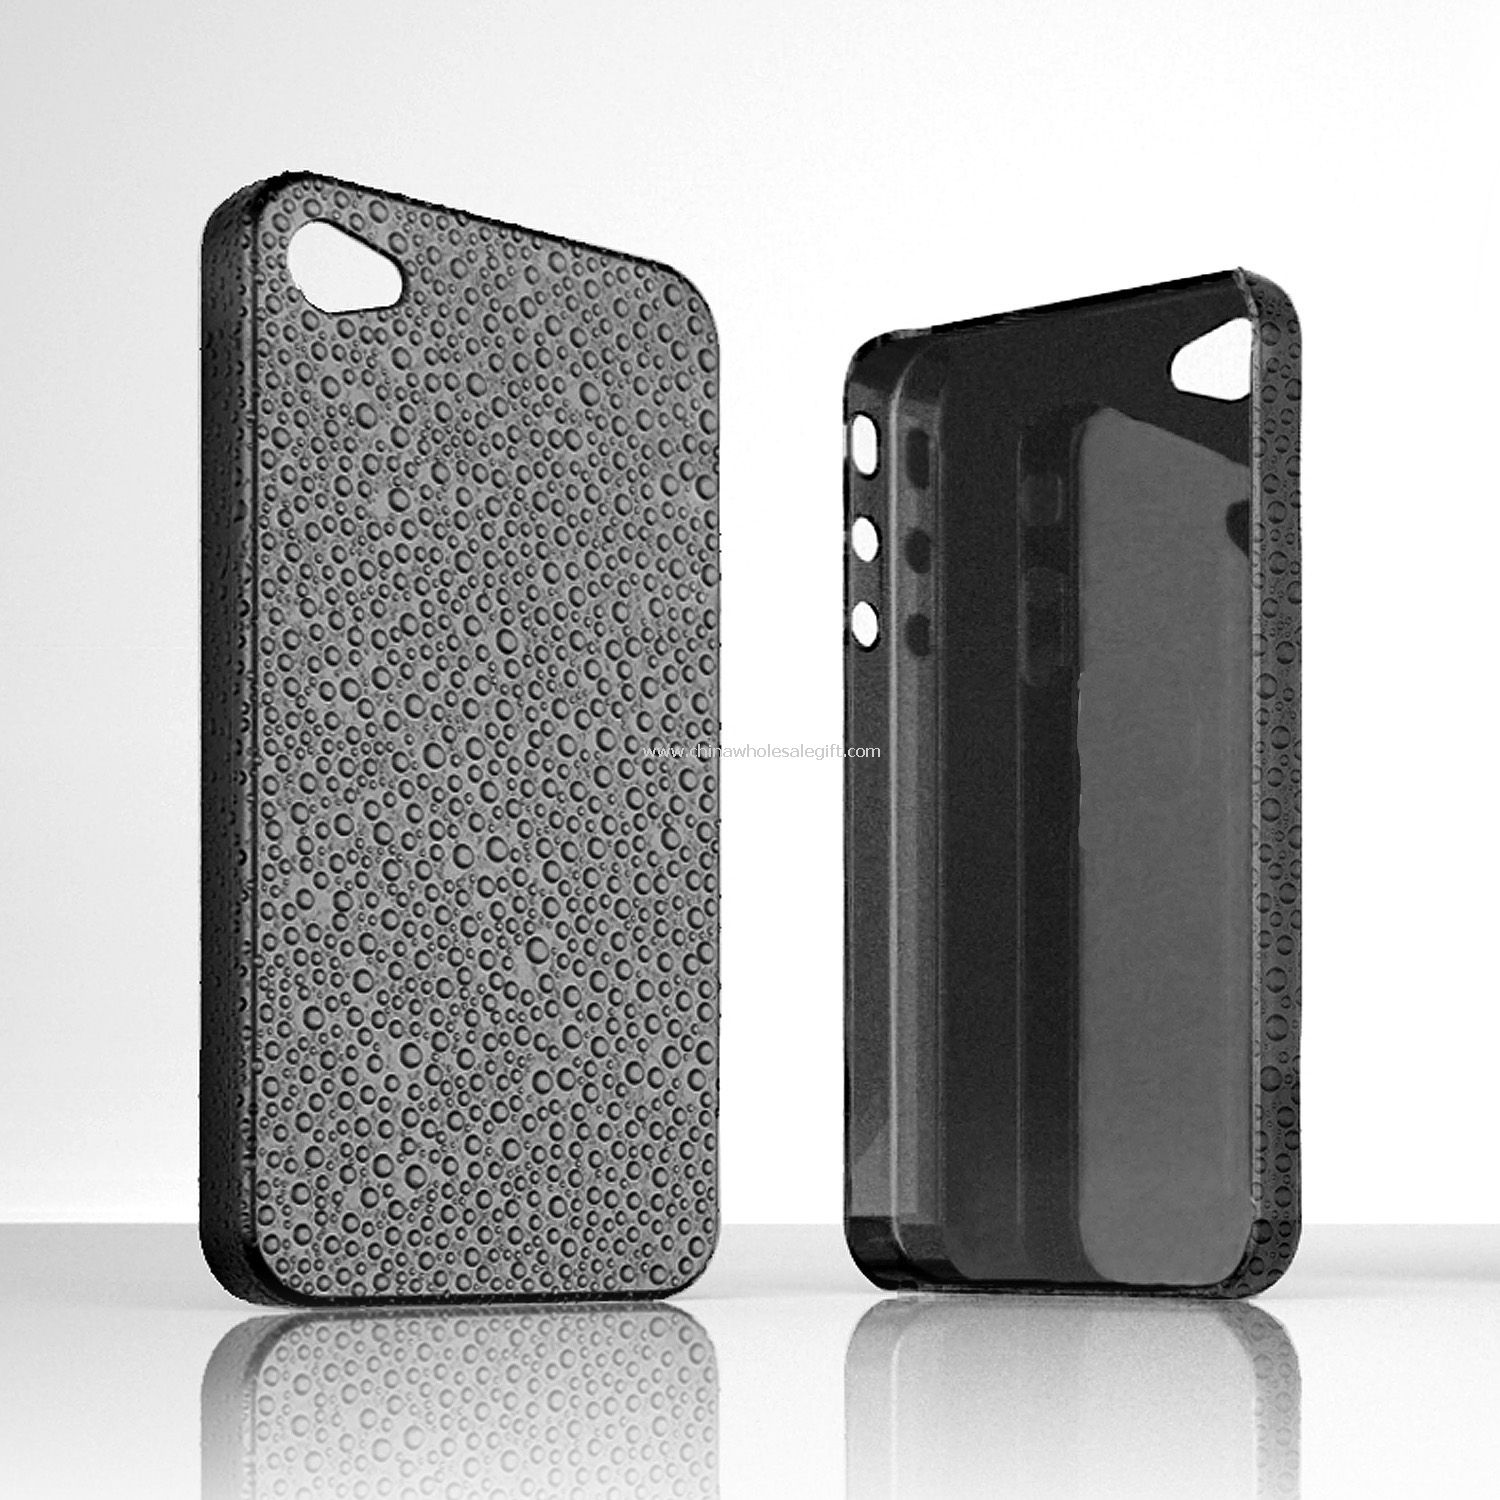 Rain iPhone 4 cases